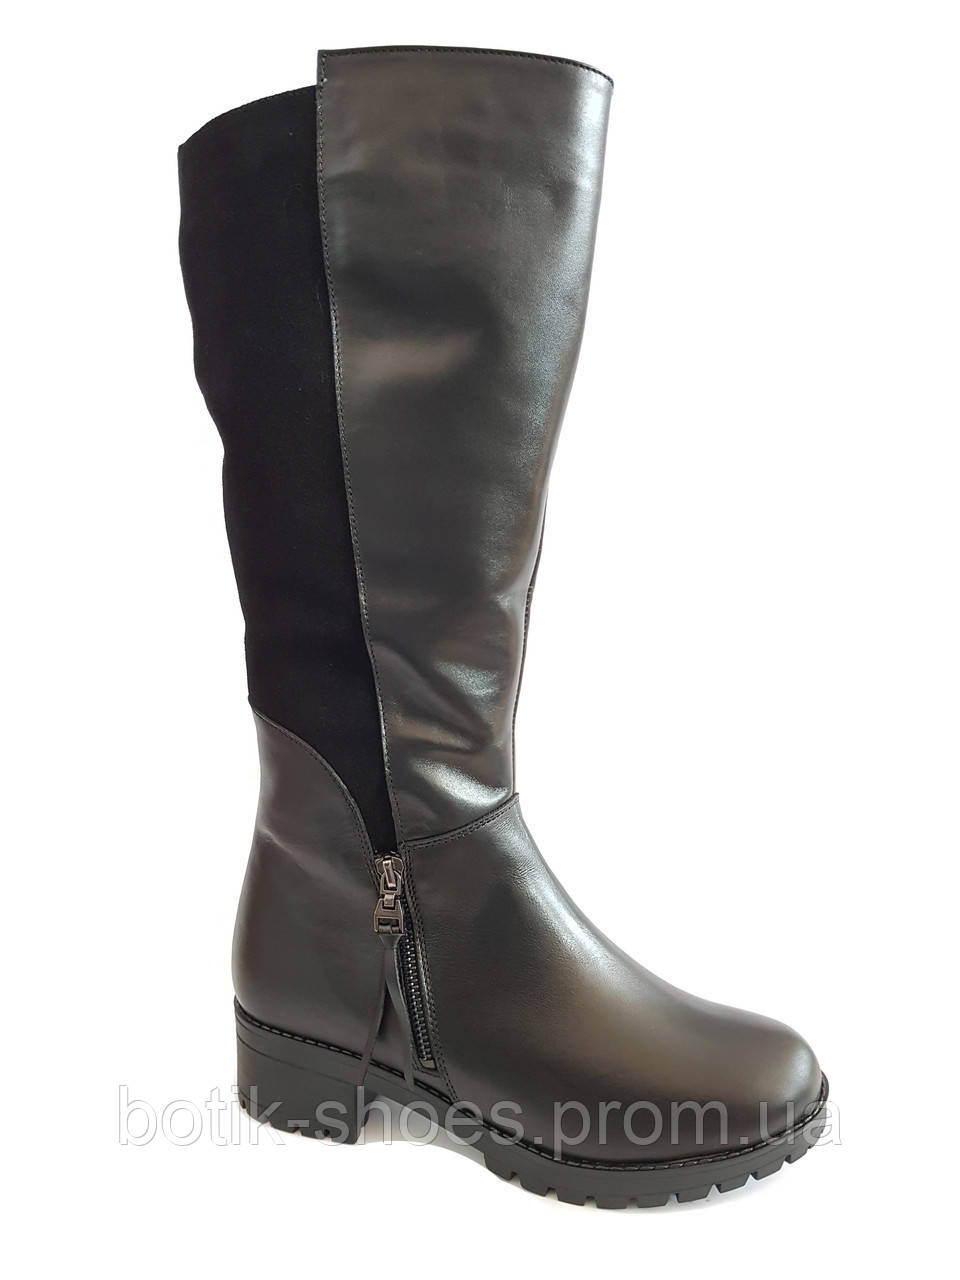 Якісні зимові чоботи жіночі шкіра замша модні стильні на середньому підборі теплі зручні комфорт гарні 41 розмір Romax 6178 2023